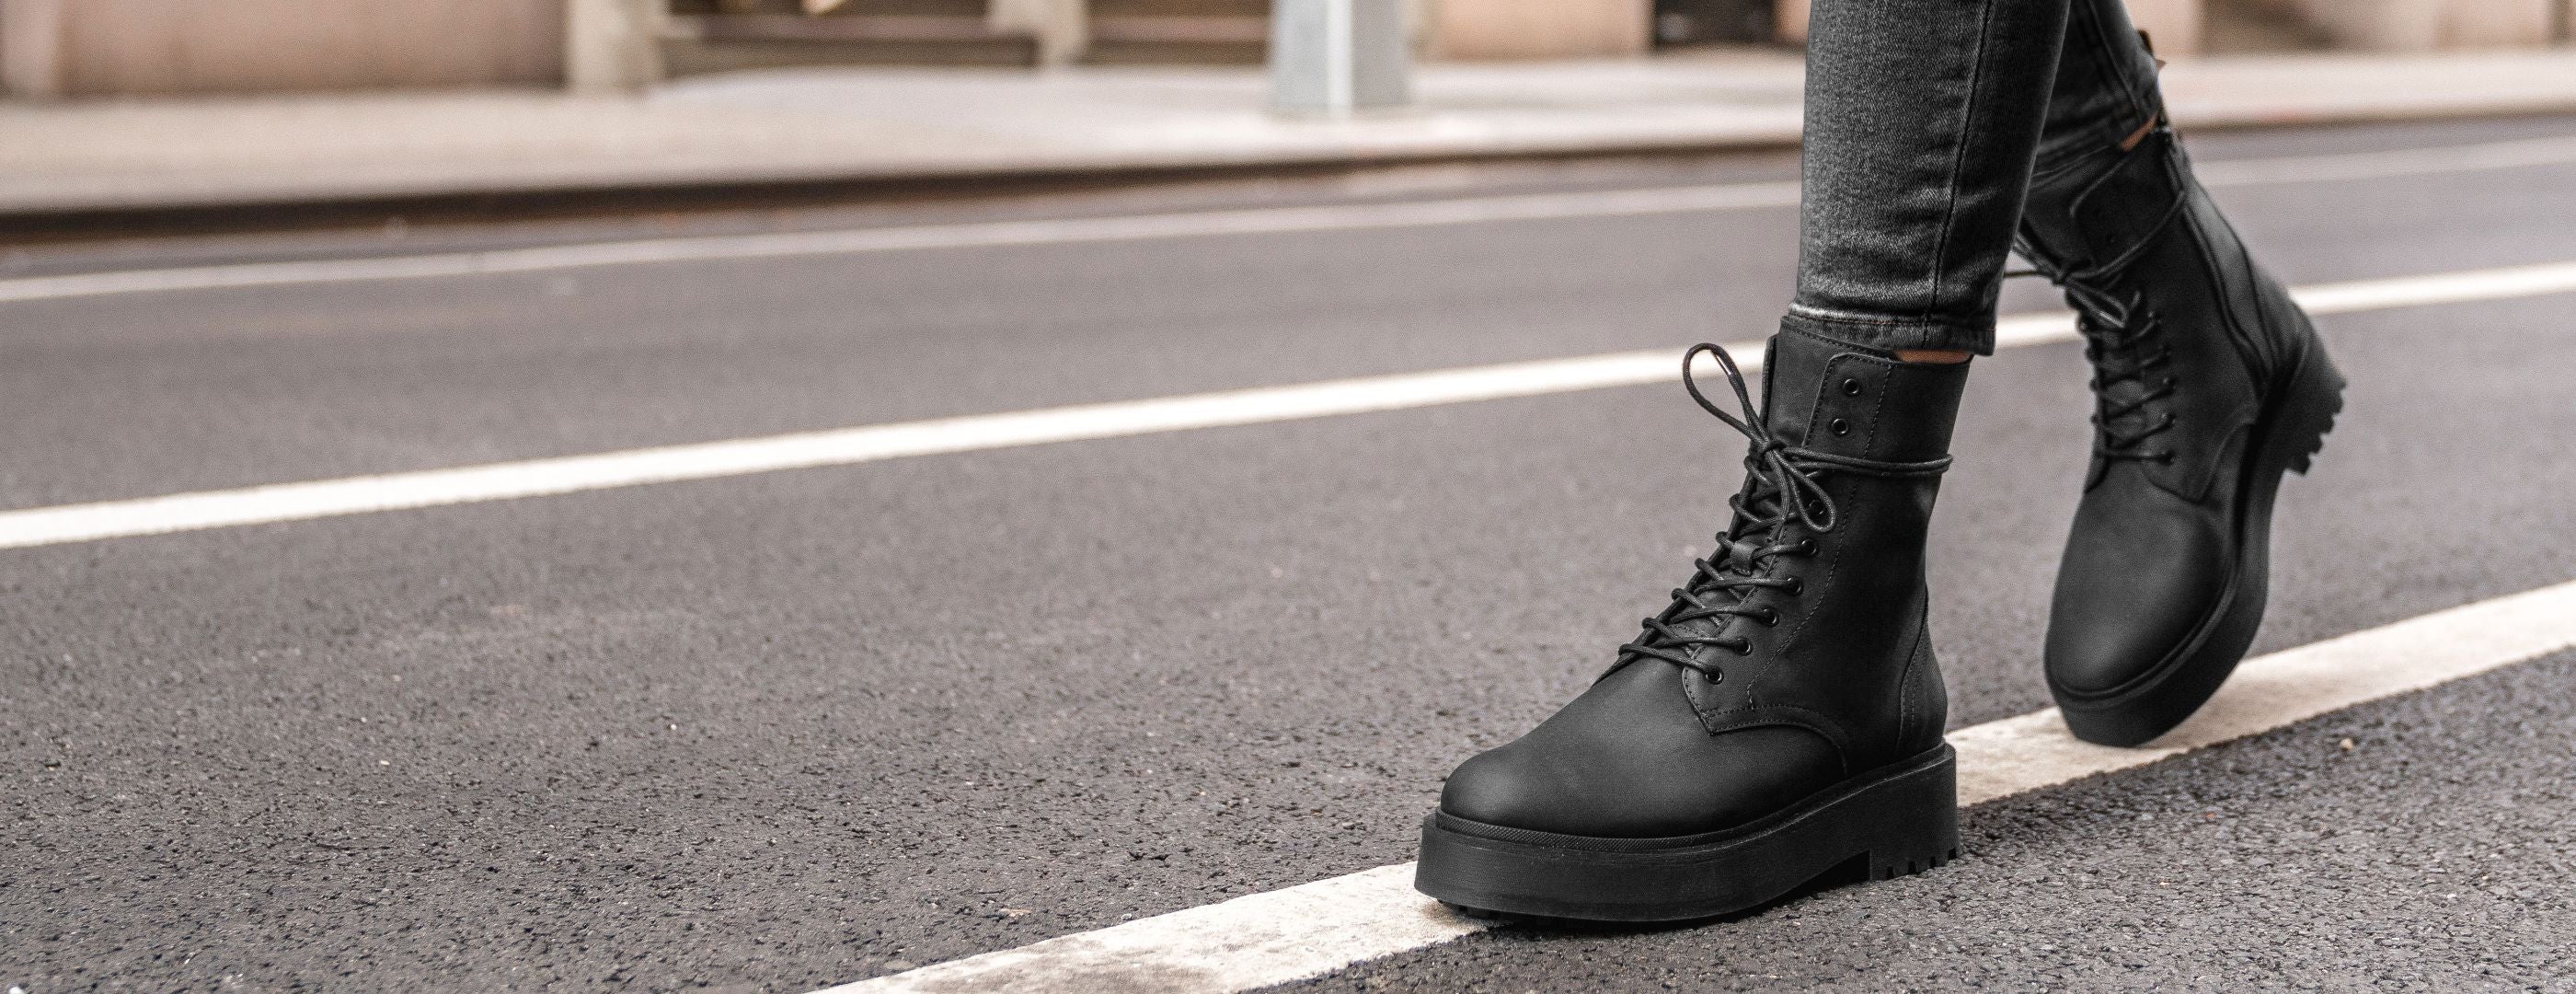 Women's Quest Combat Platform Boot in Black Matte Leather - Thursday